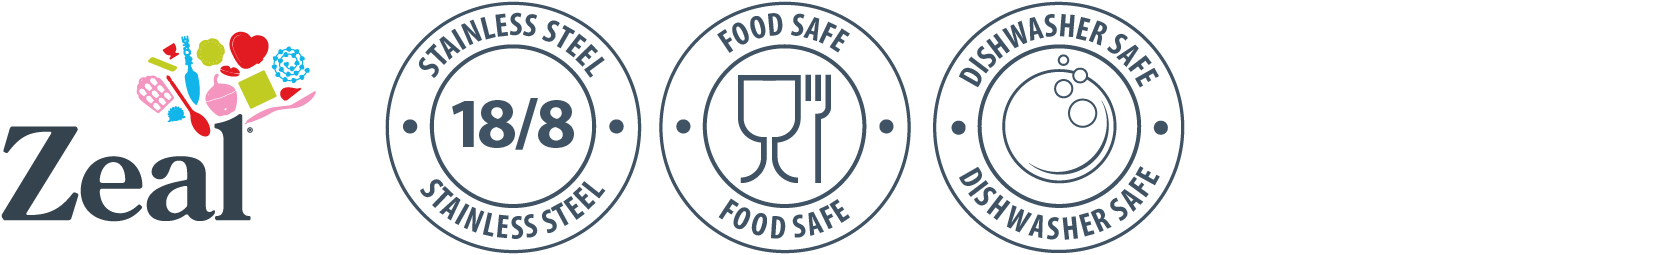 Zeal Stainless Steel, Food Safe & Dishwasher Safe